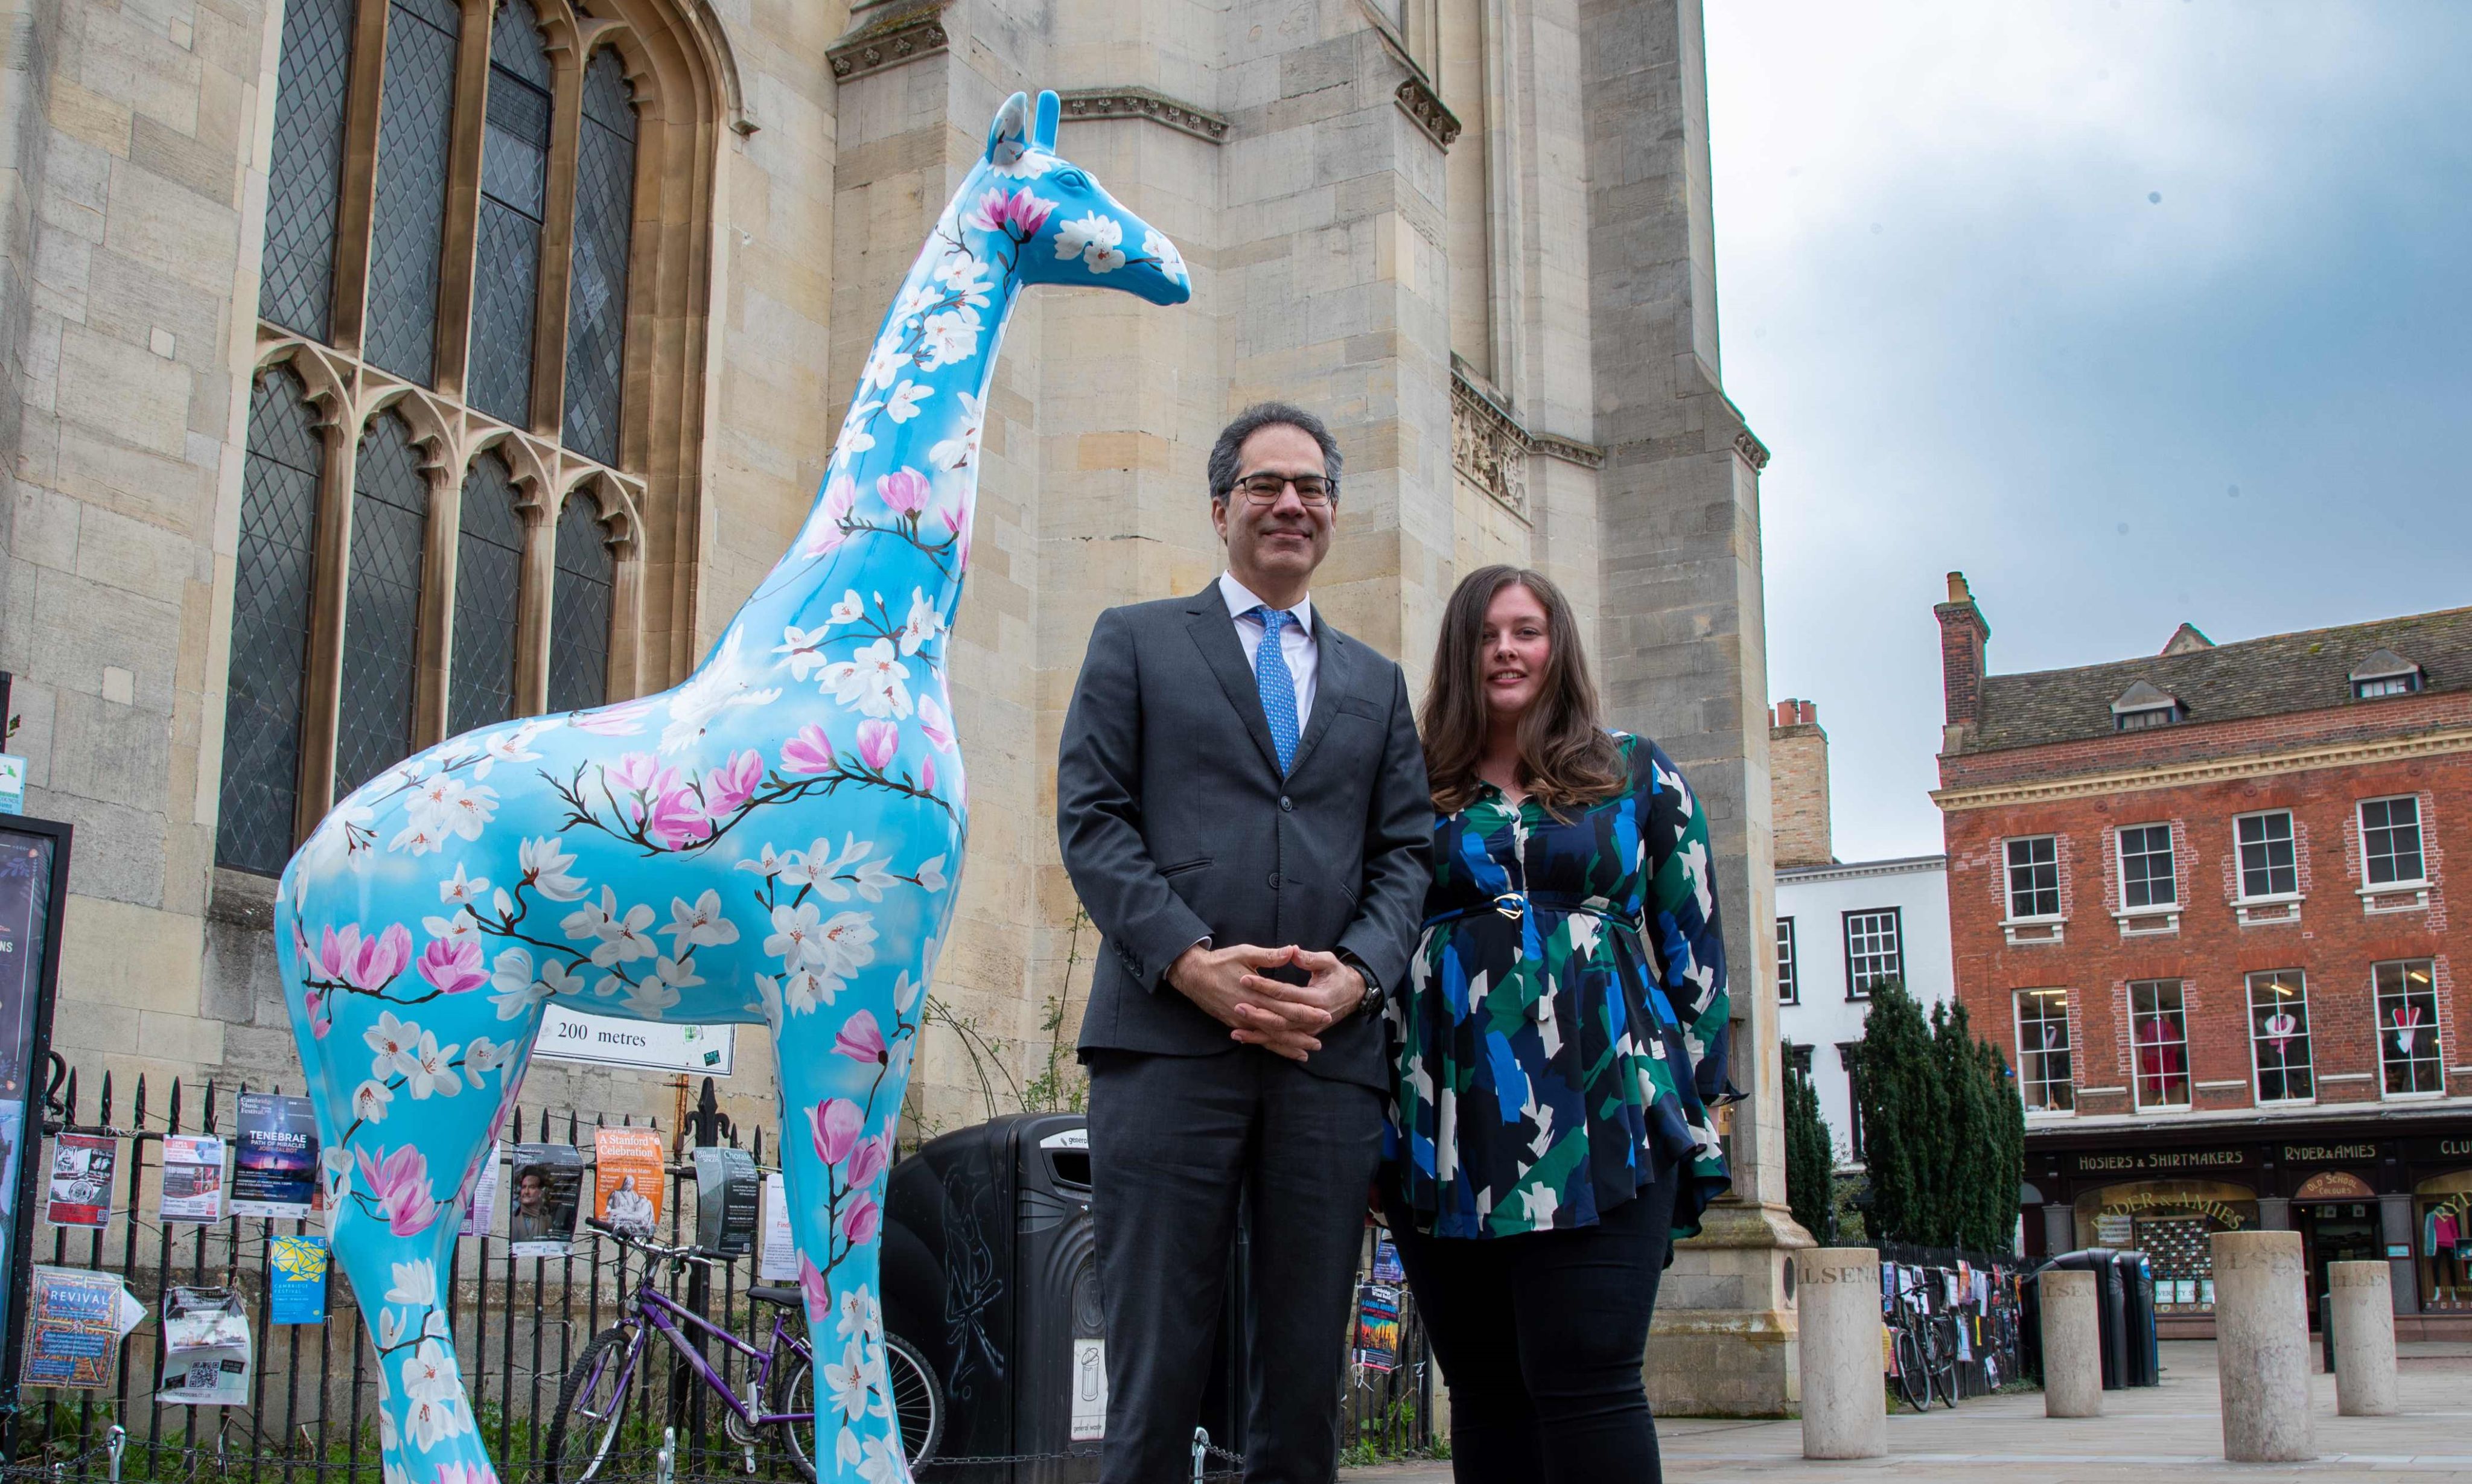 Professor Kamal Munir with artist Charlie Stafford, and giraffe sculpture Growth